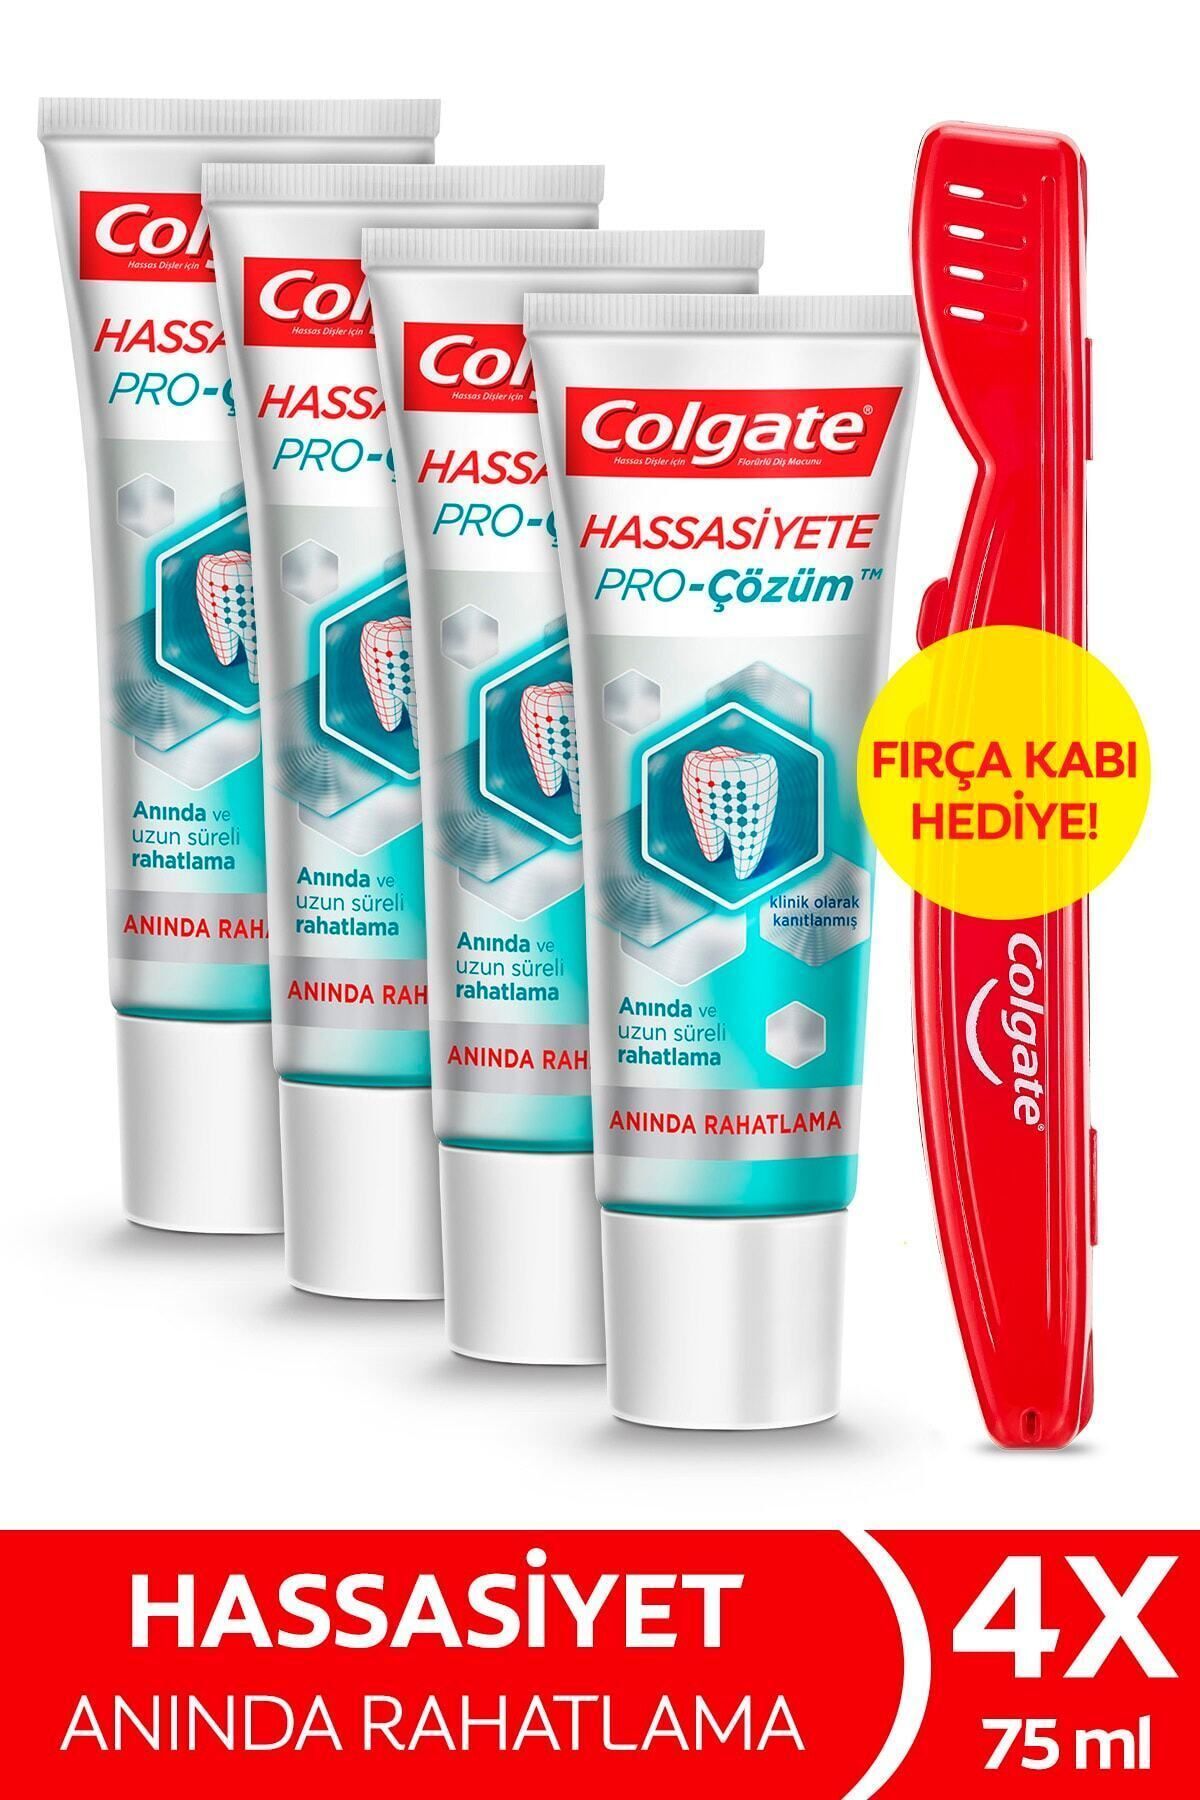 Colgate Hassasiyete Pro Çözüm Anında Rahatlama Diş Macunu 75 ml x 4 Adet + Fırça Kabı Hediye